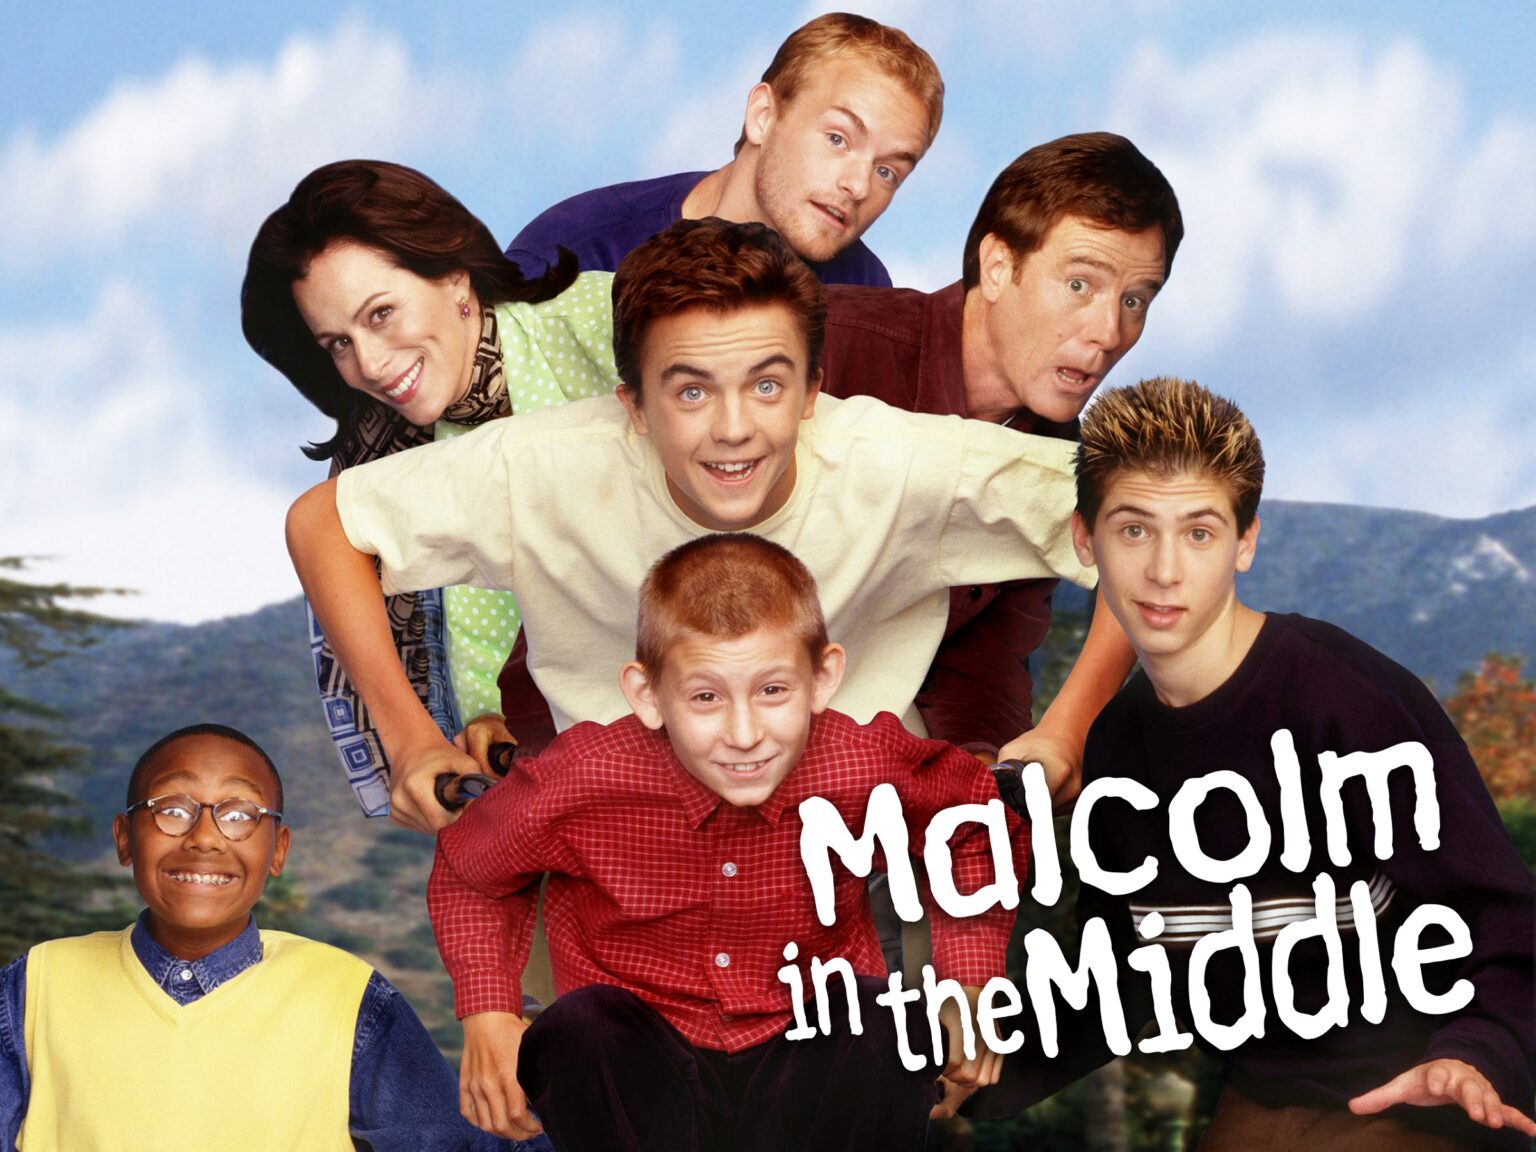 Sí, no, tal vez, ¿puedes repetir la pregunta? Recuerda todas las frases de 'Malcolm' el de Enmedio' que marcaron tu infancia.